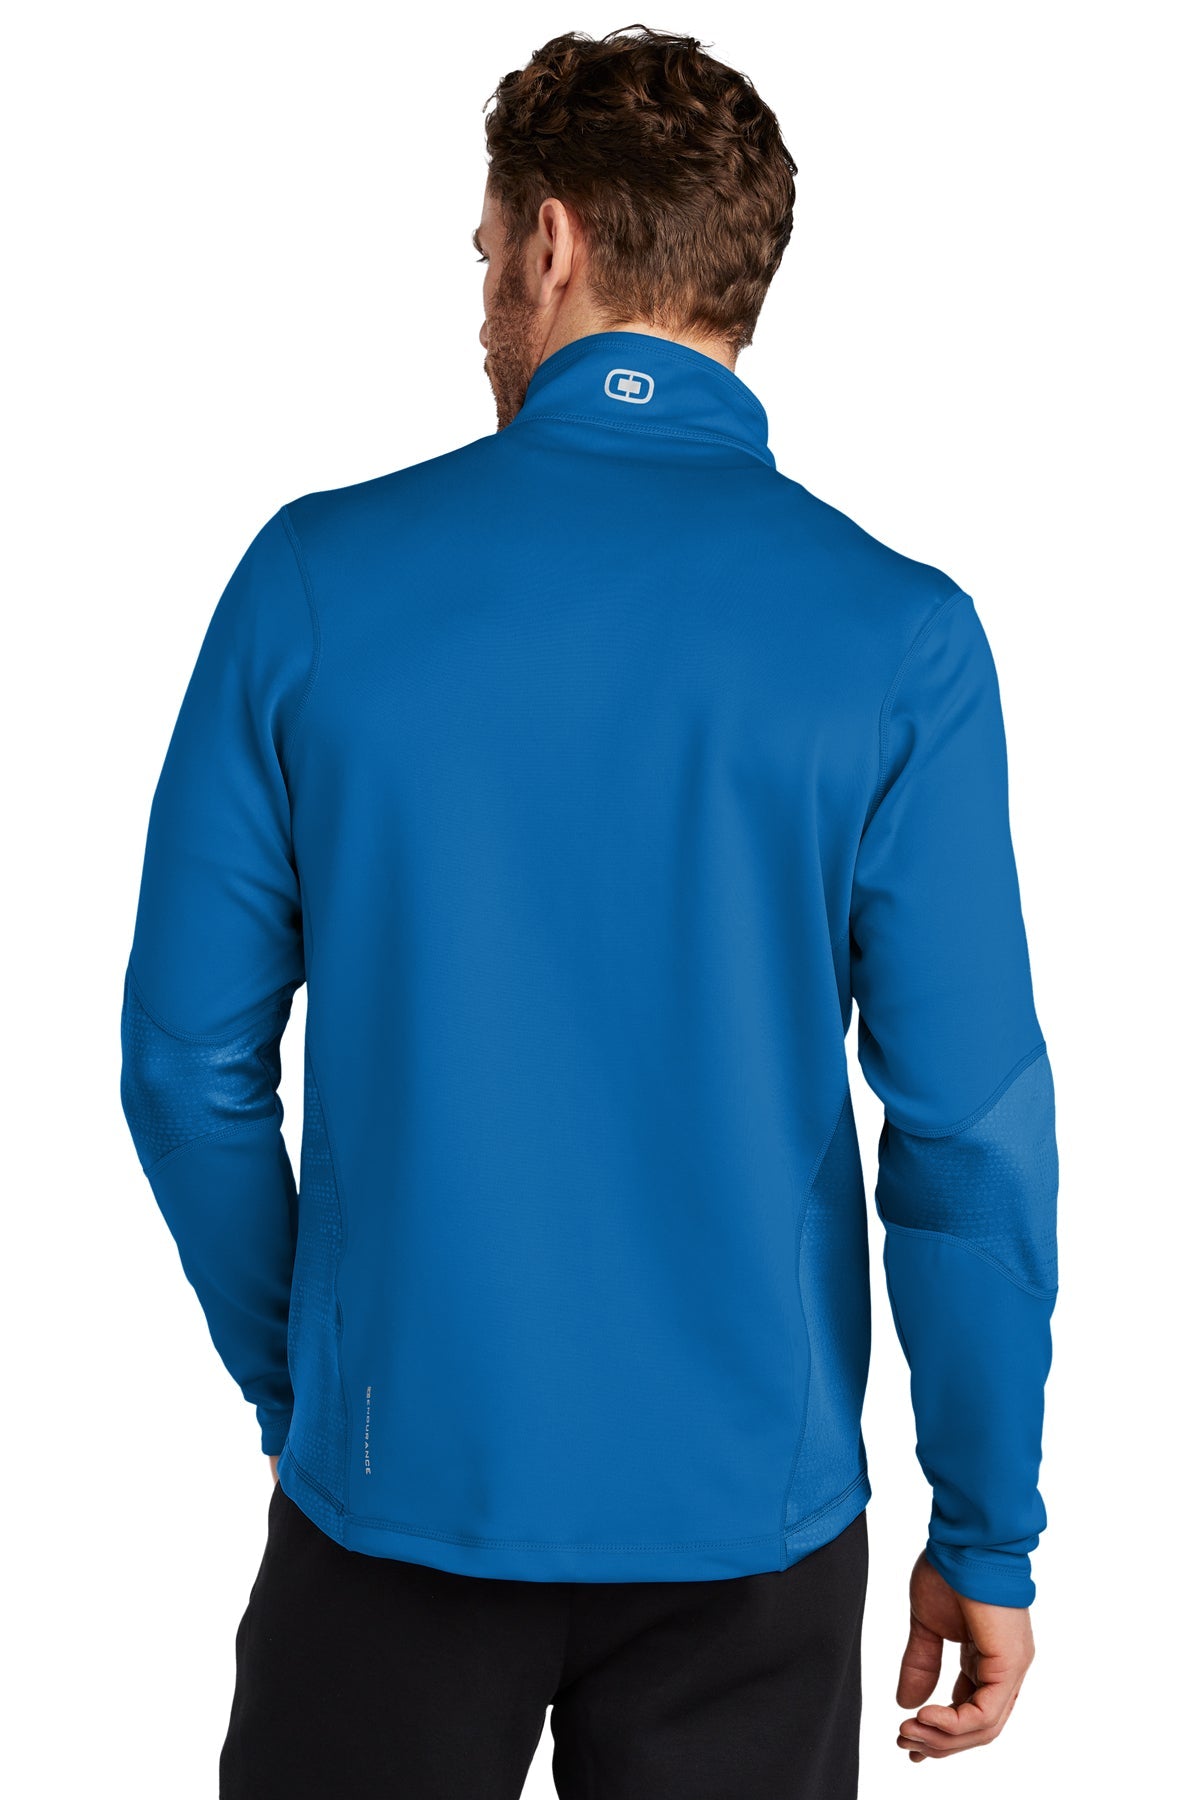 ogio endurance_oe701 _electric blue_company_logo_jackets